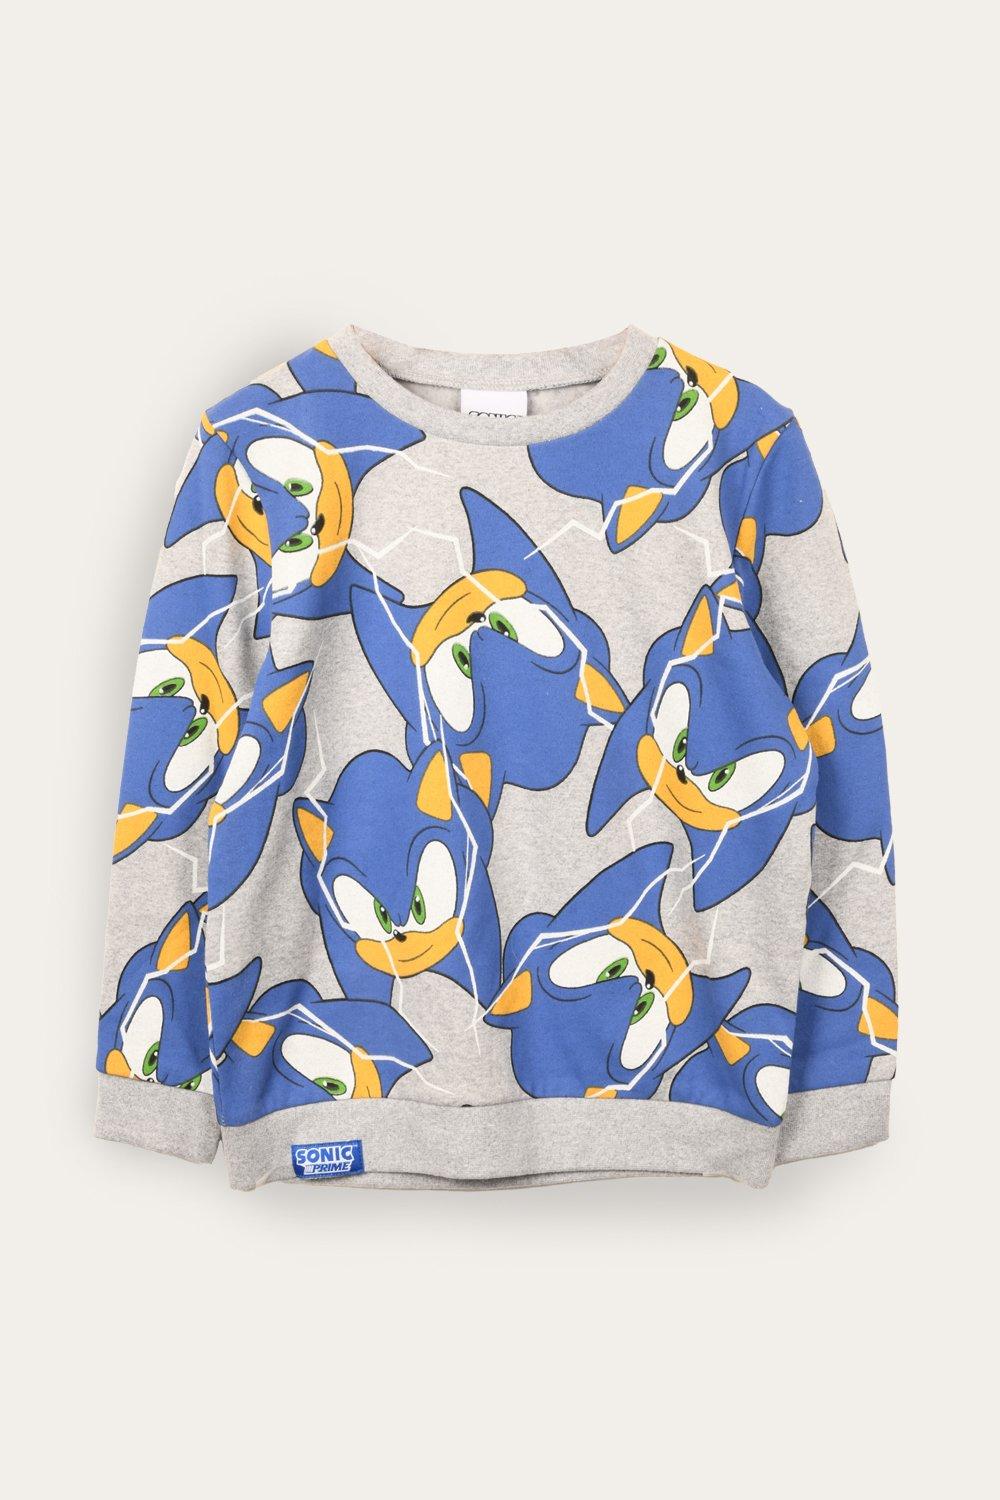 Sonic Prime Sweatshirt